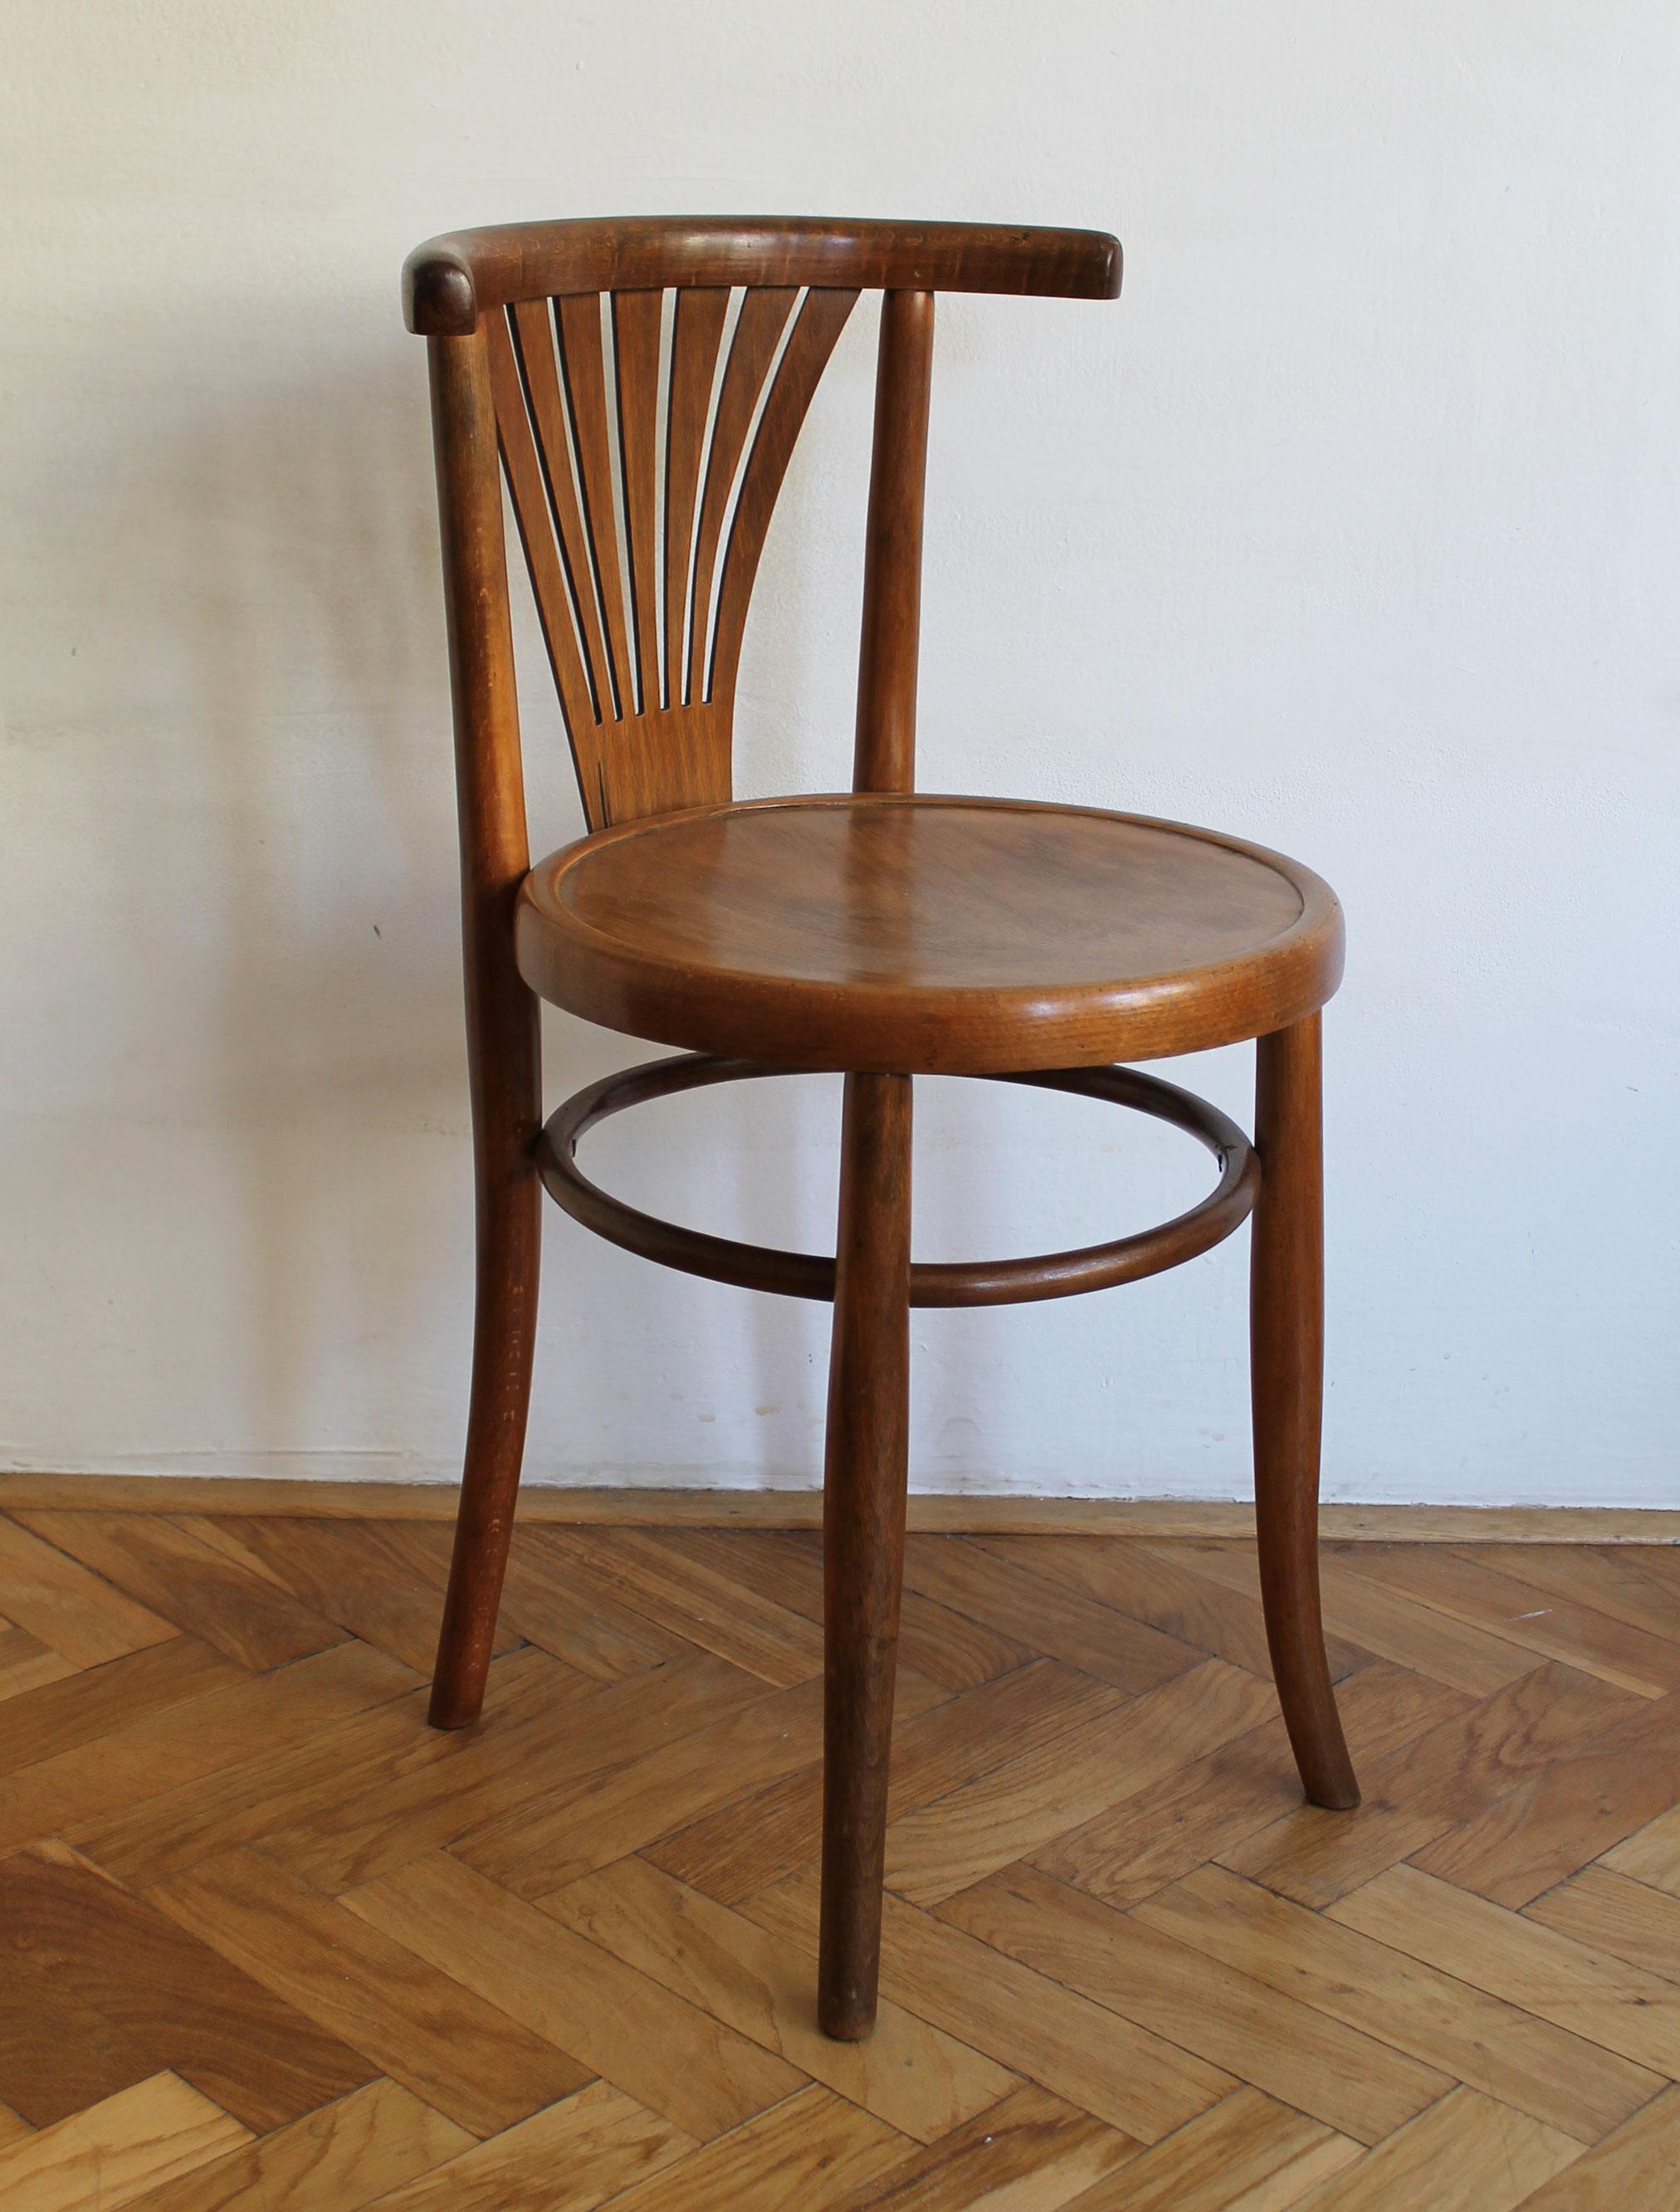 Il s'agit d'un ensemble original de deux chaises de salle à manger produites par la société de meubles Ungvar à Uzhorod. Cette usine a longtemps fait partie de l'empire austro-hongrois. À l'époque où ces chaises ont été produites, Uzhorod faisait